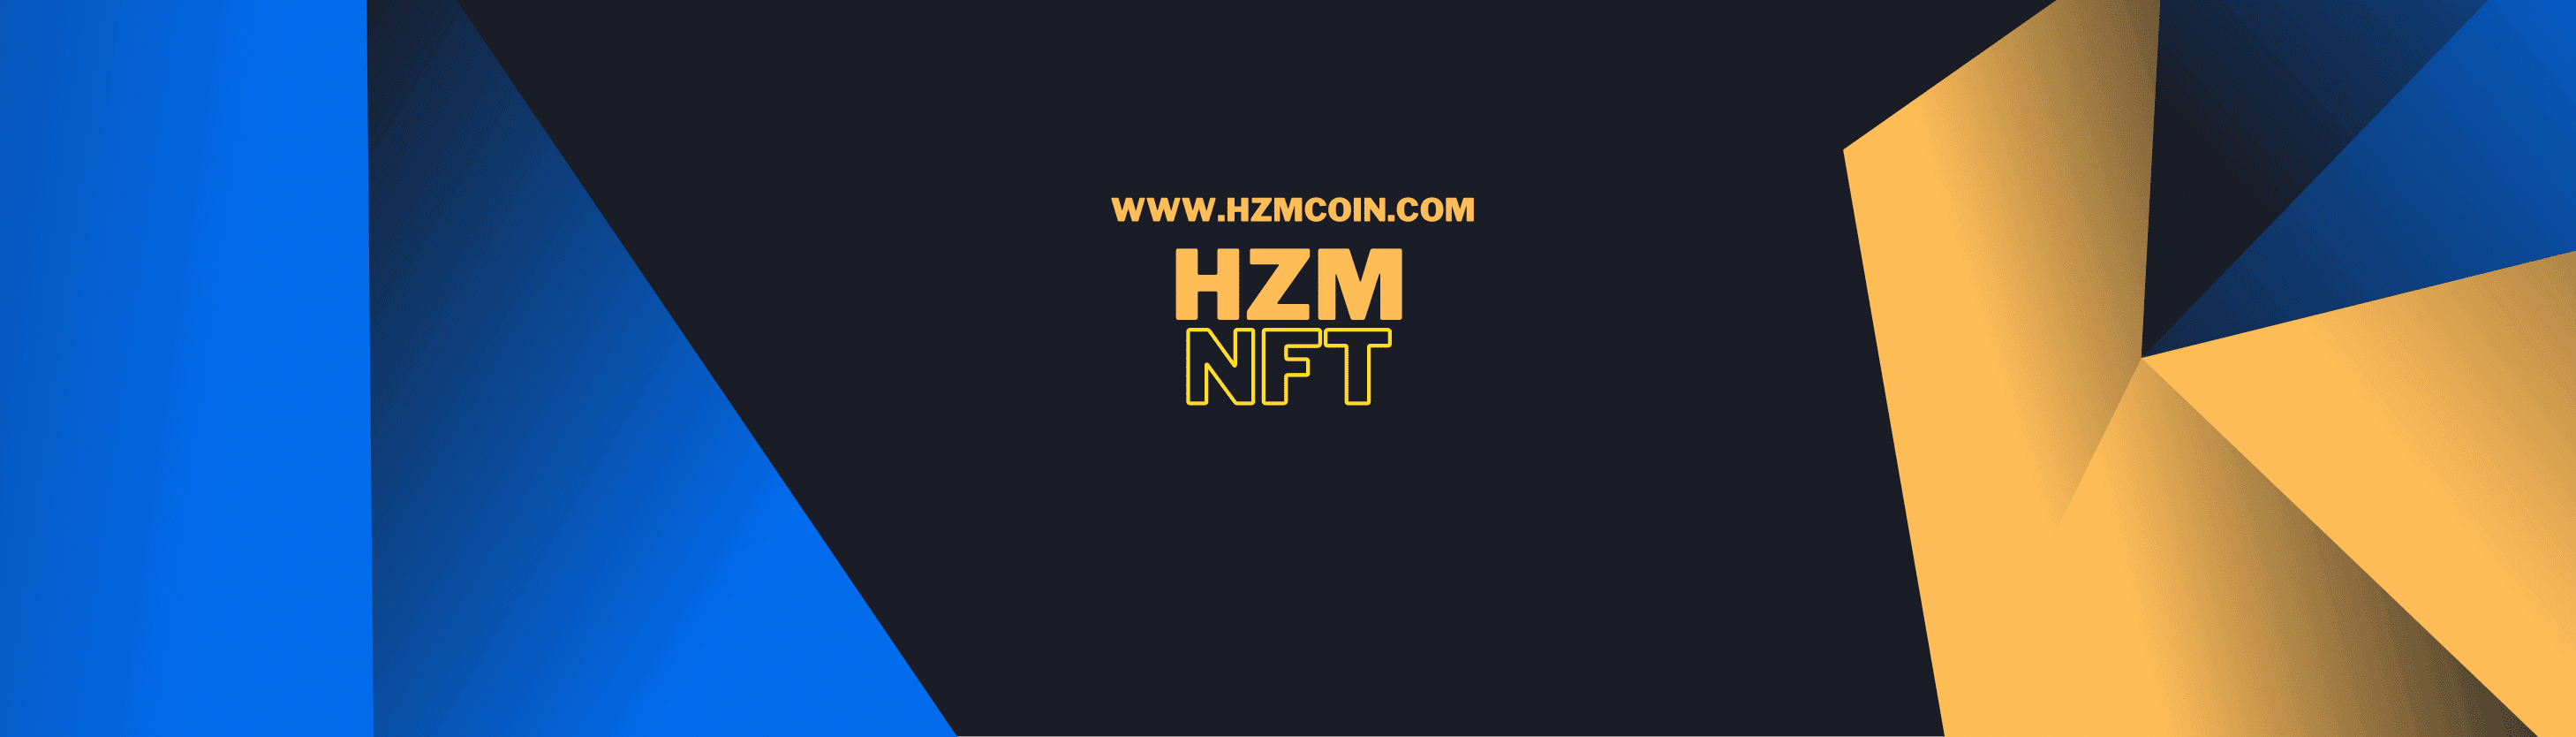 HZM_NFT banner